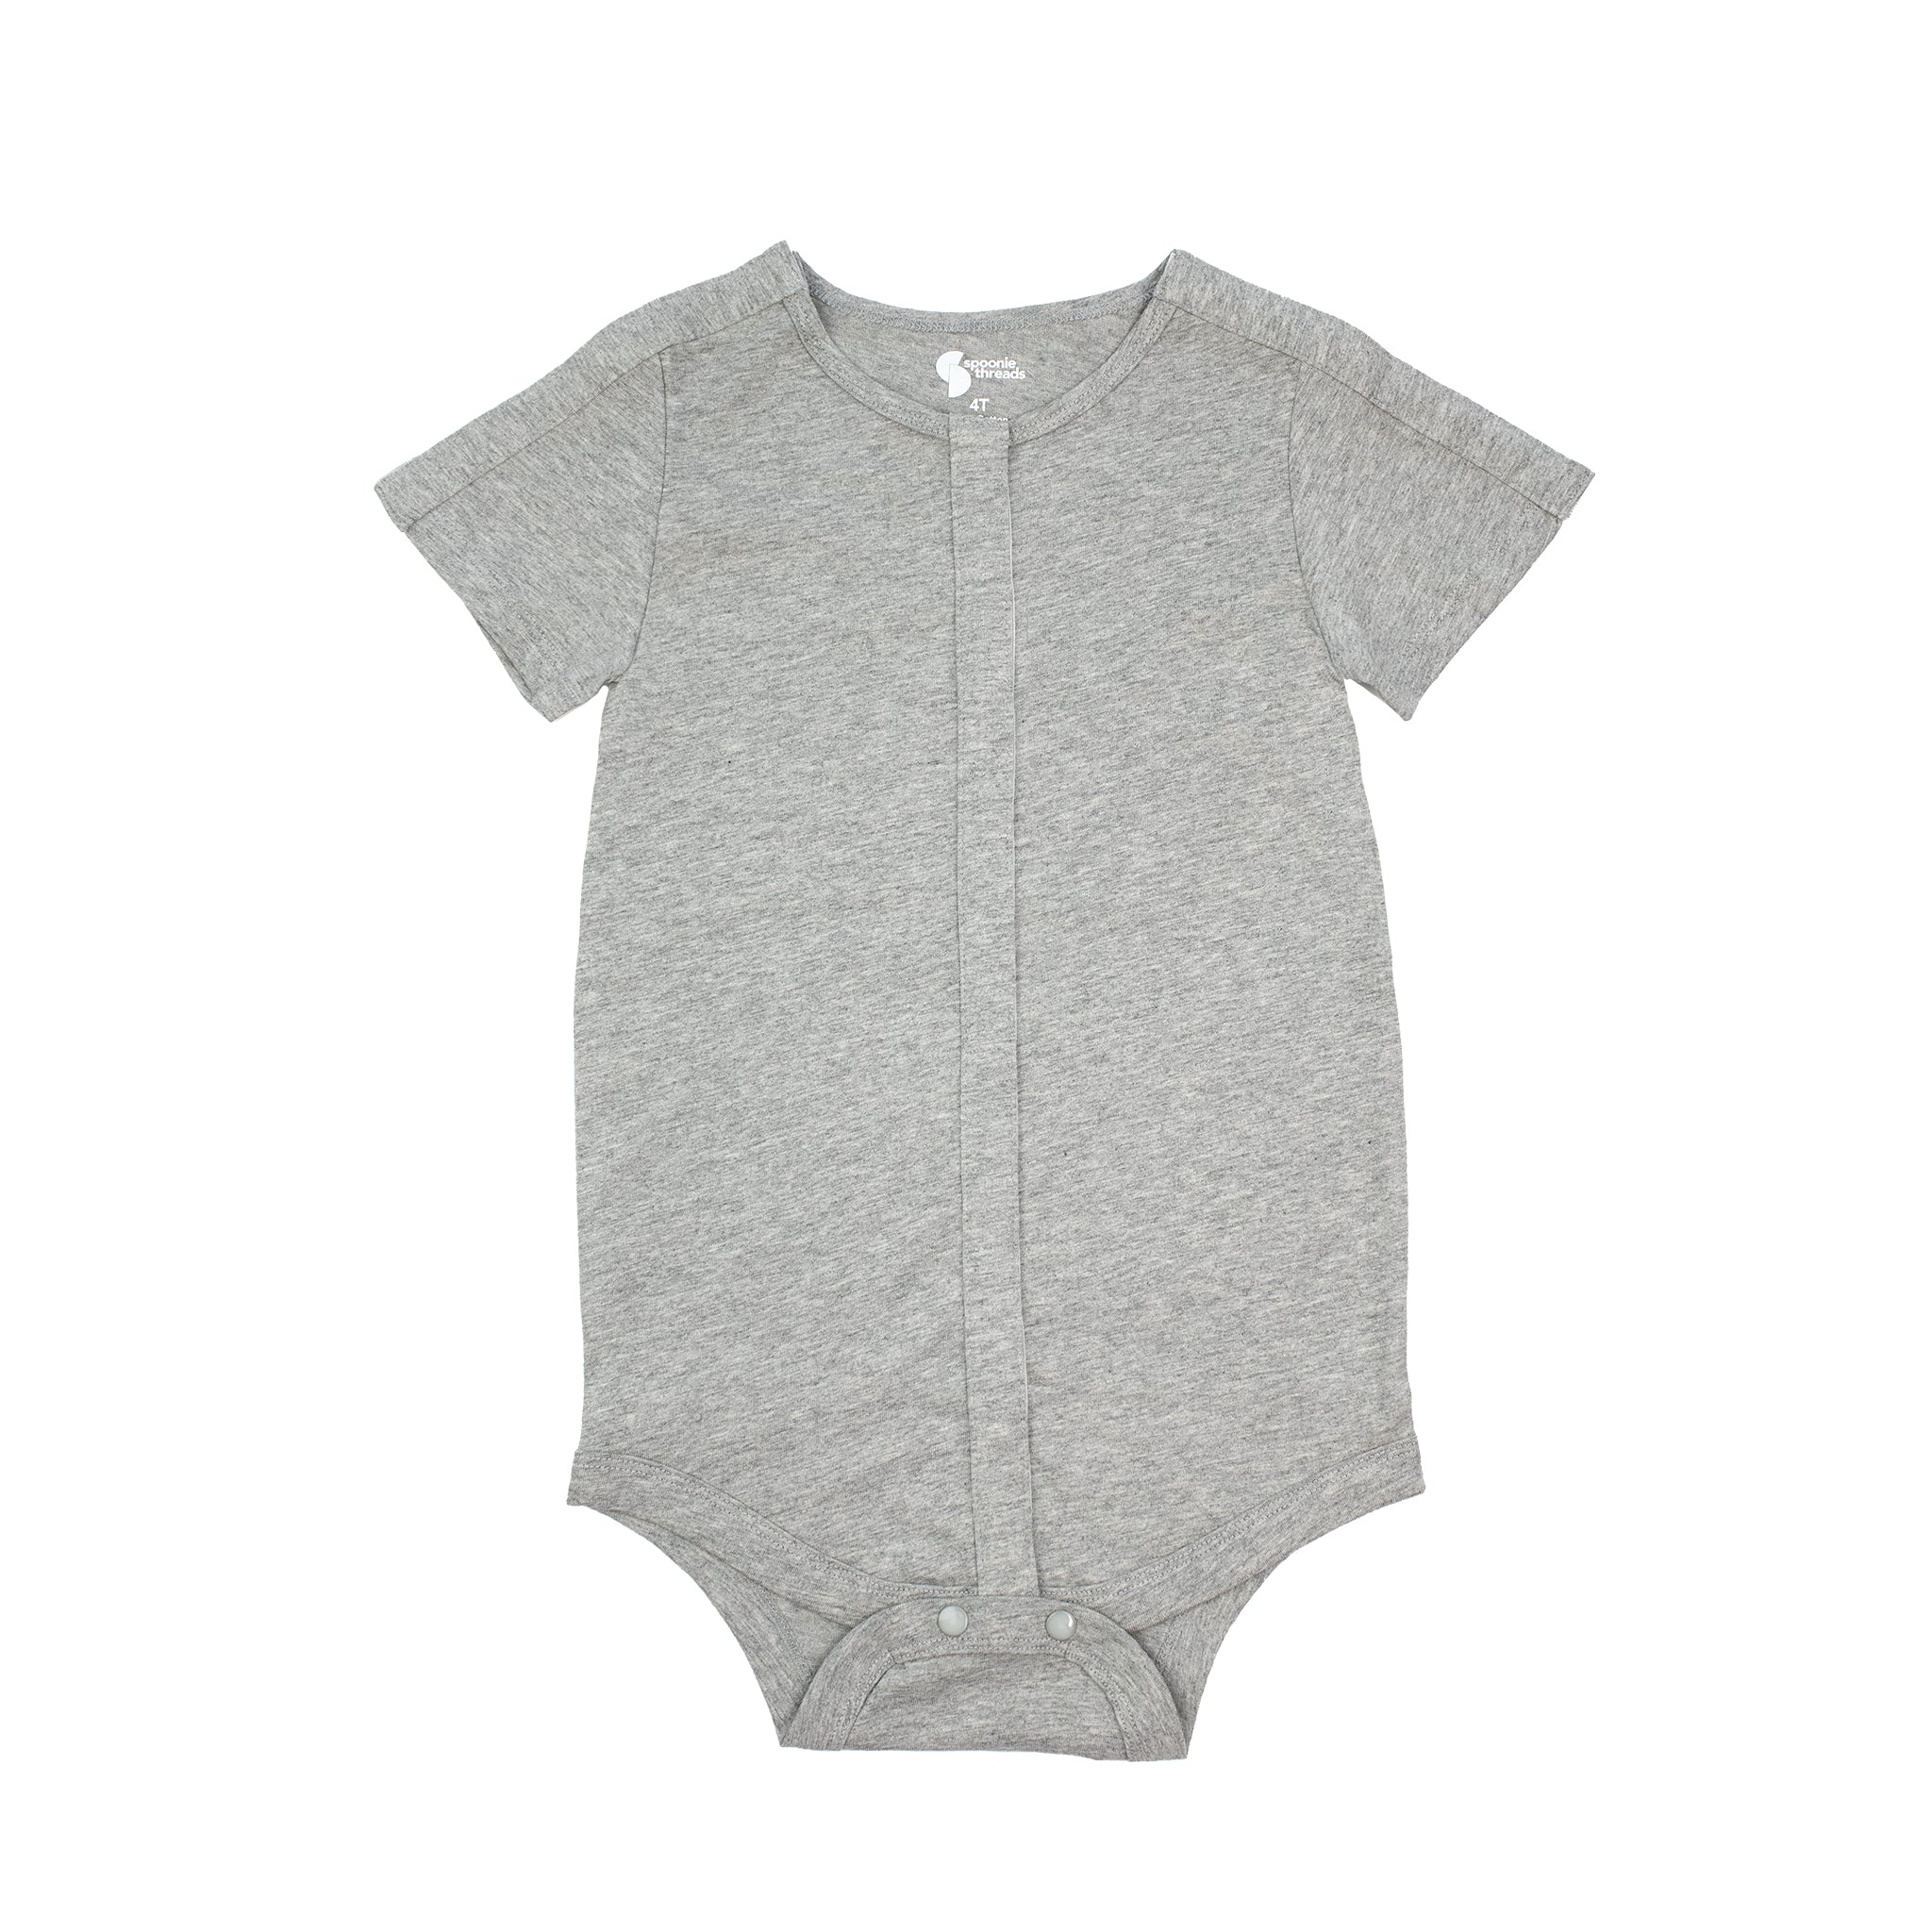 Épinglé sur Baby clothing